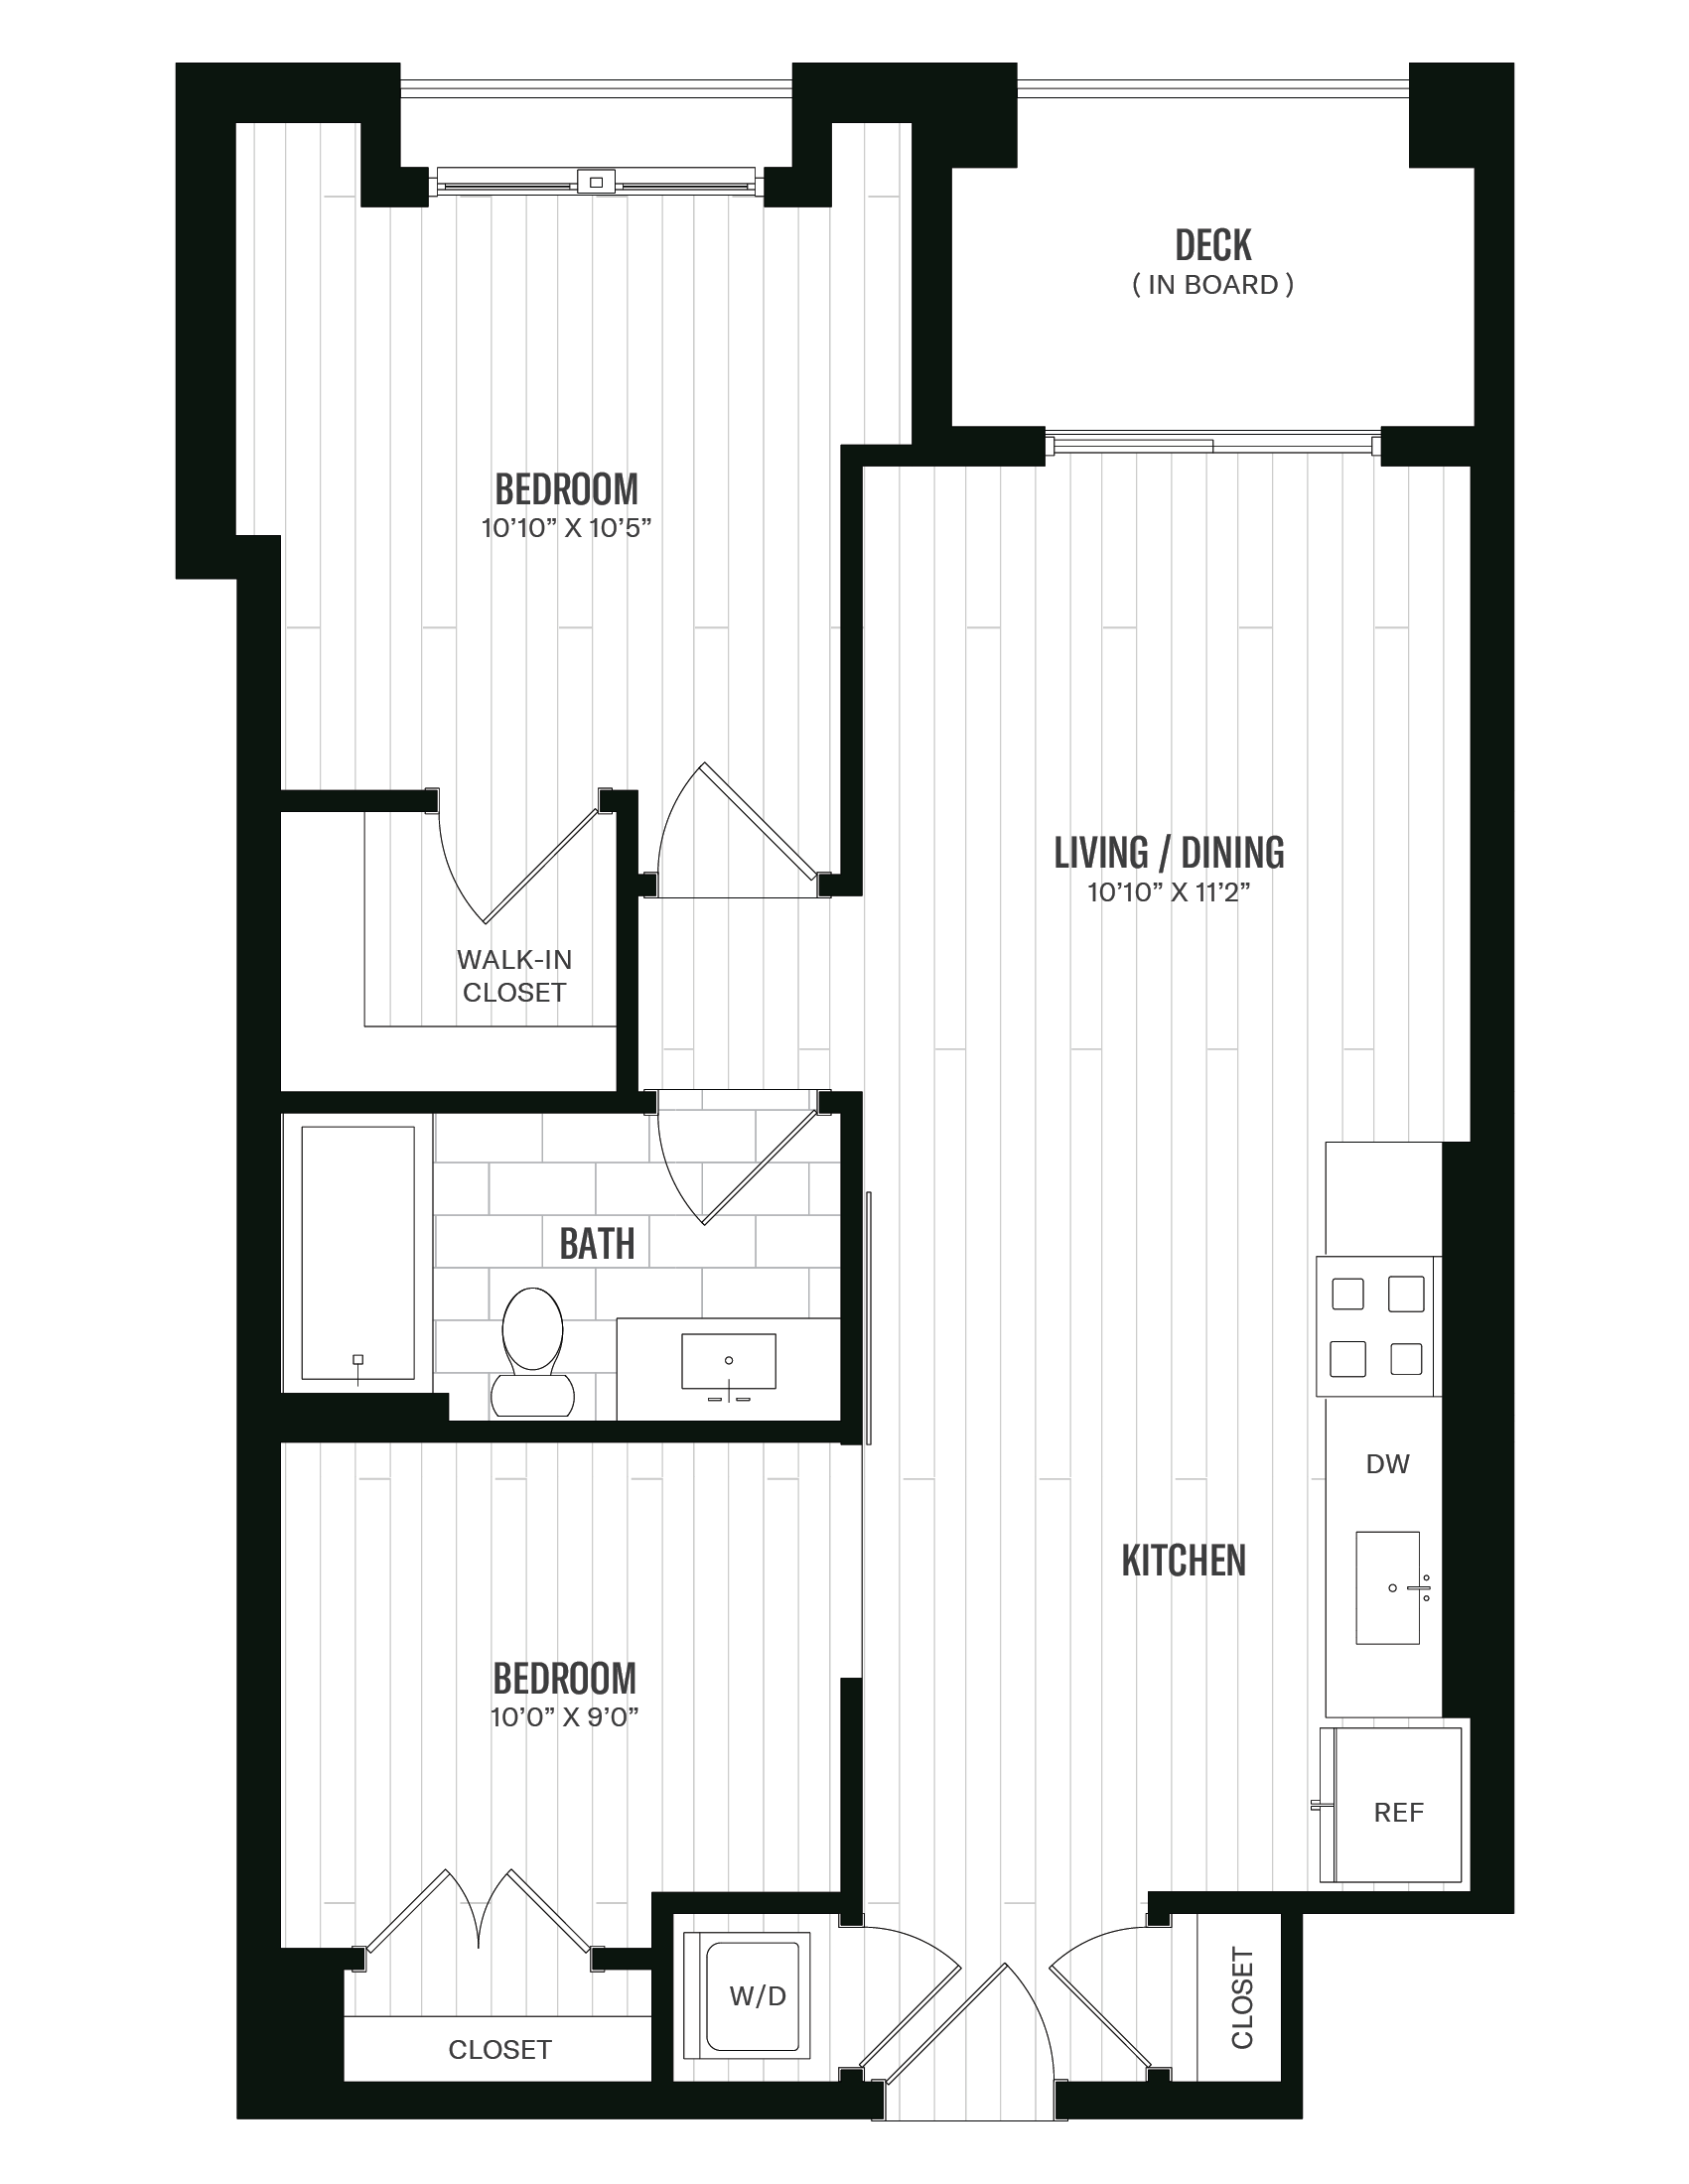 Floorplan image of unit 524